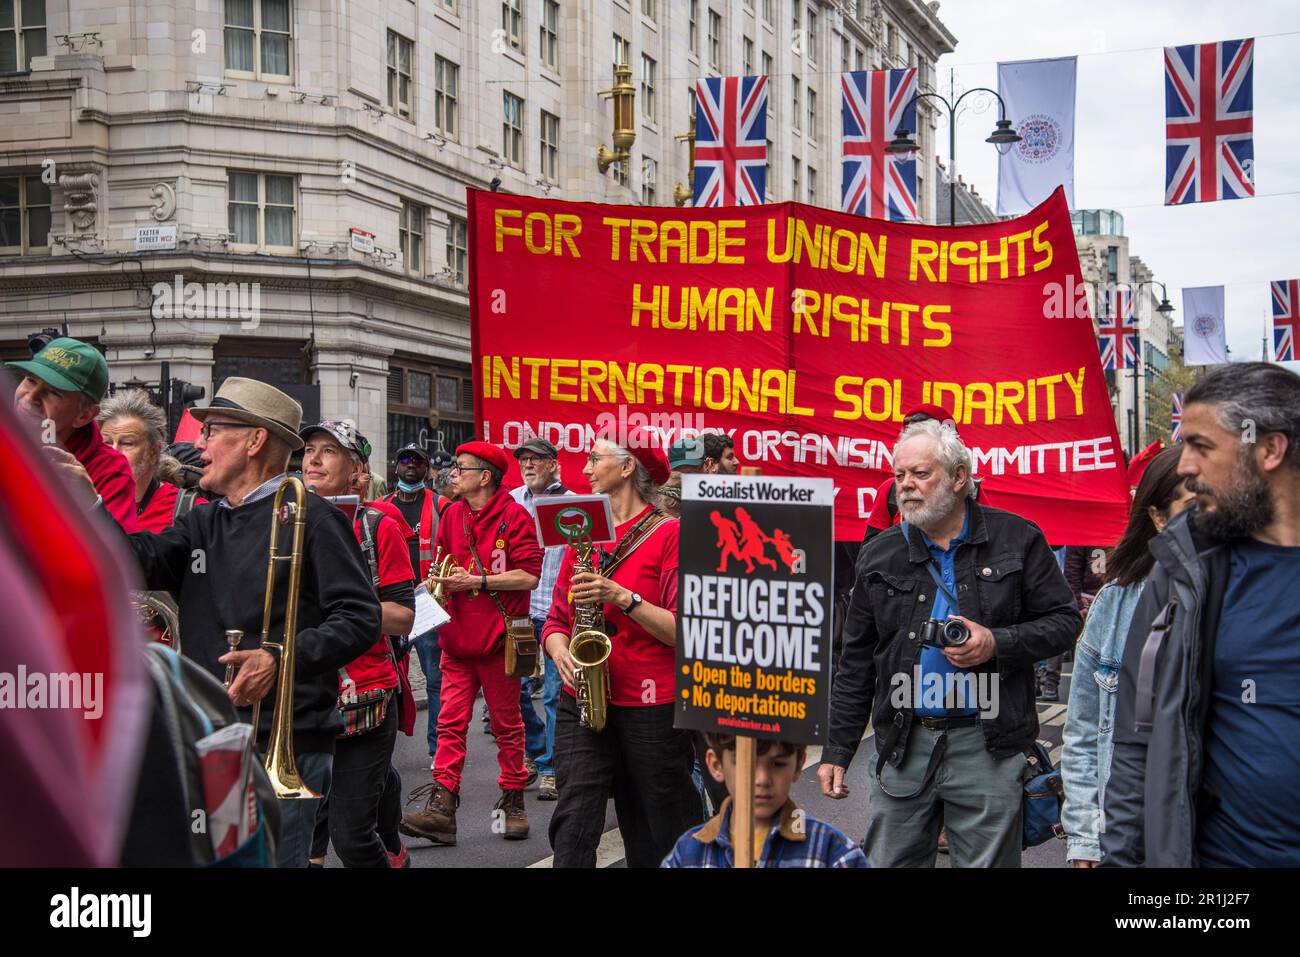 Maggio Giornata Internazionale dei lavoratori rally, Londra, Inghilterra, Regno Unito, 01/05/2023 Foto Stock